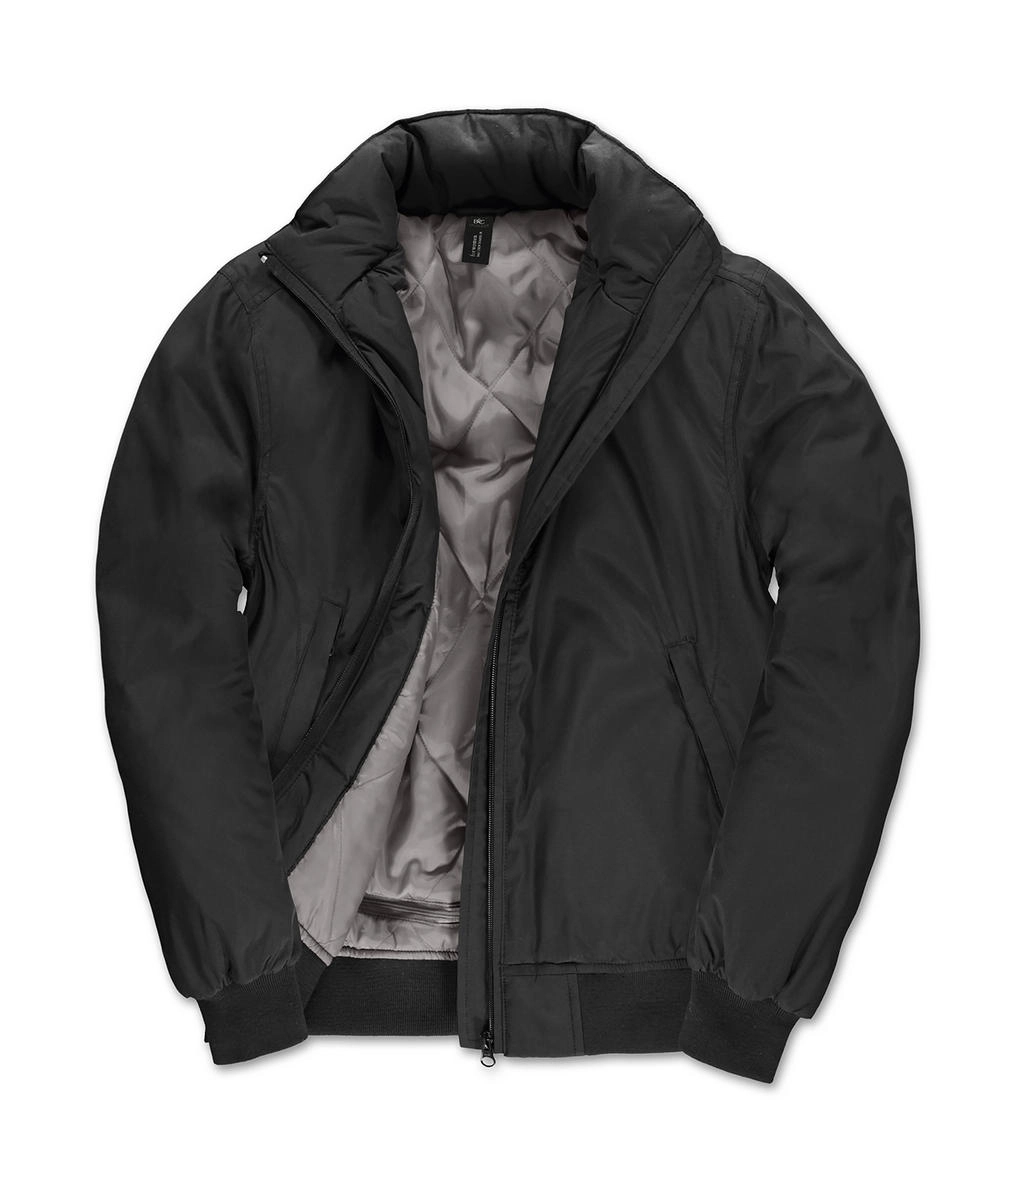 Crew Bomber/women Jacket zum Besticken und Bedrucken in der Farbe Black/Warm Grey mit Ihren Logo, Schriftzug oder Motiv.